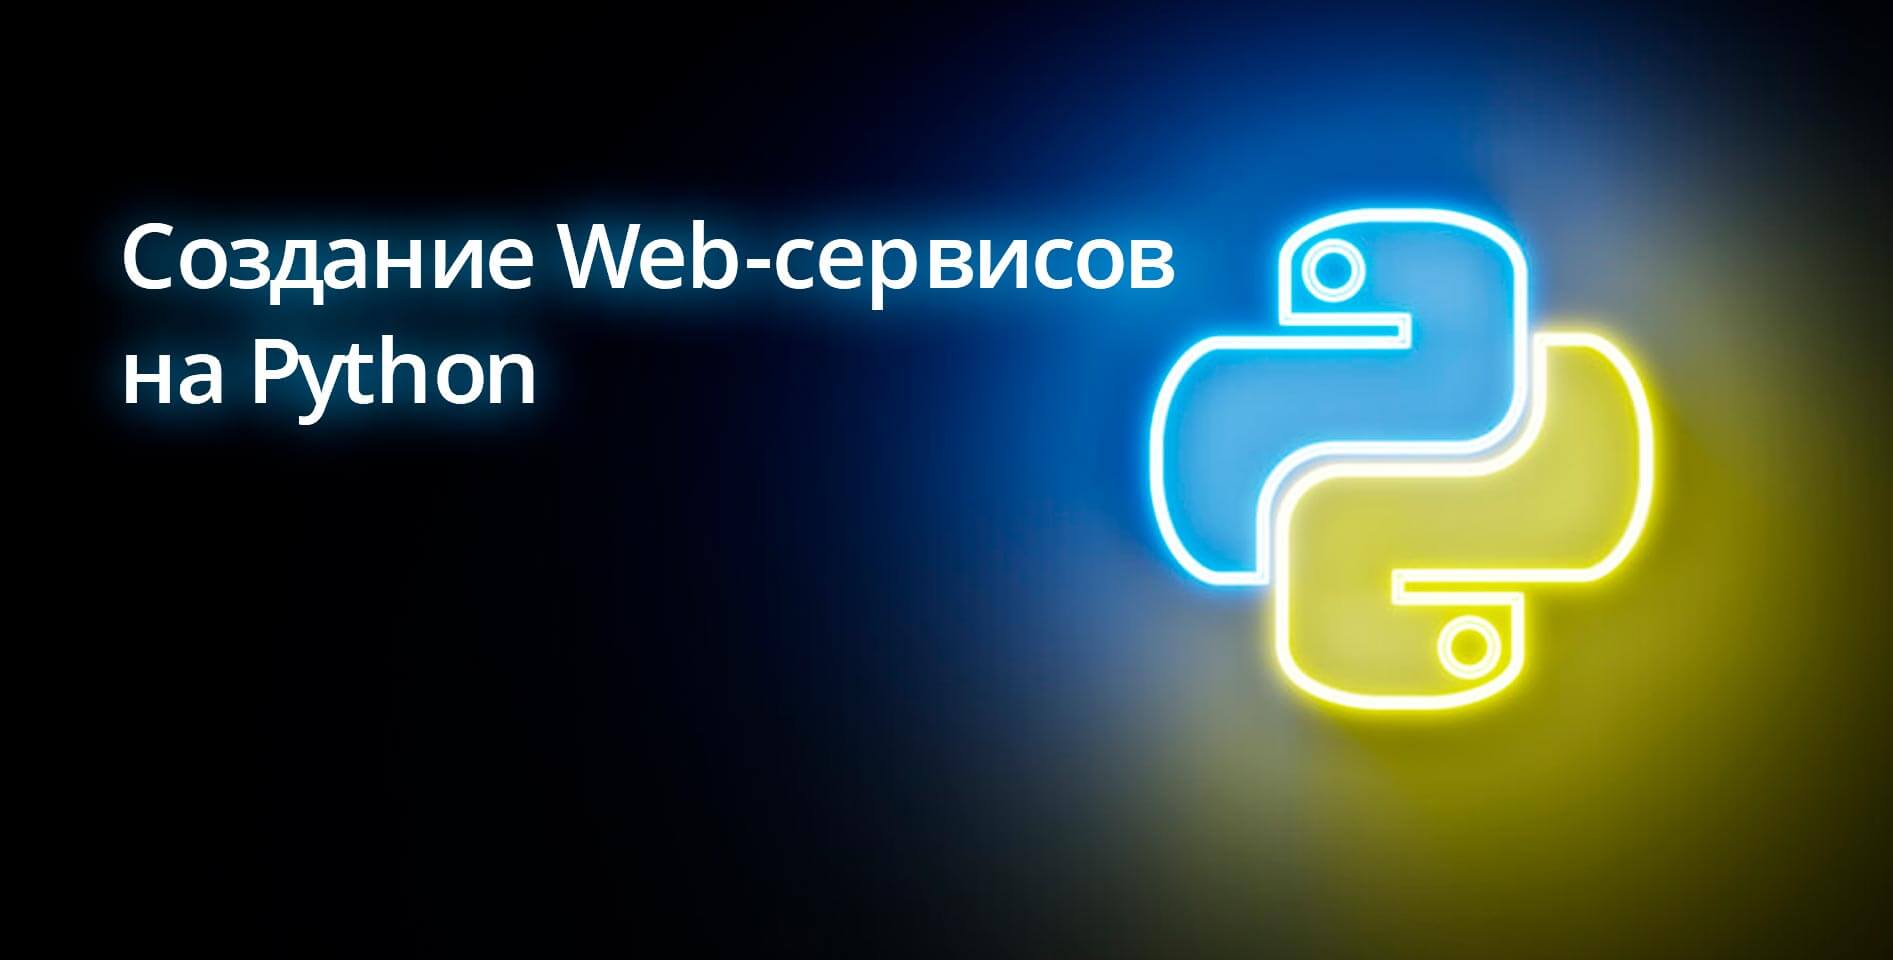 Coursera — Создание Web-сервисов на Python